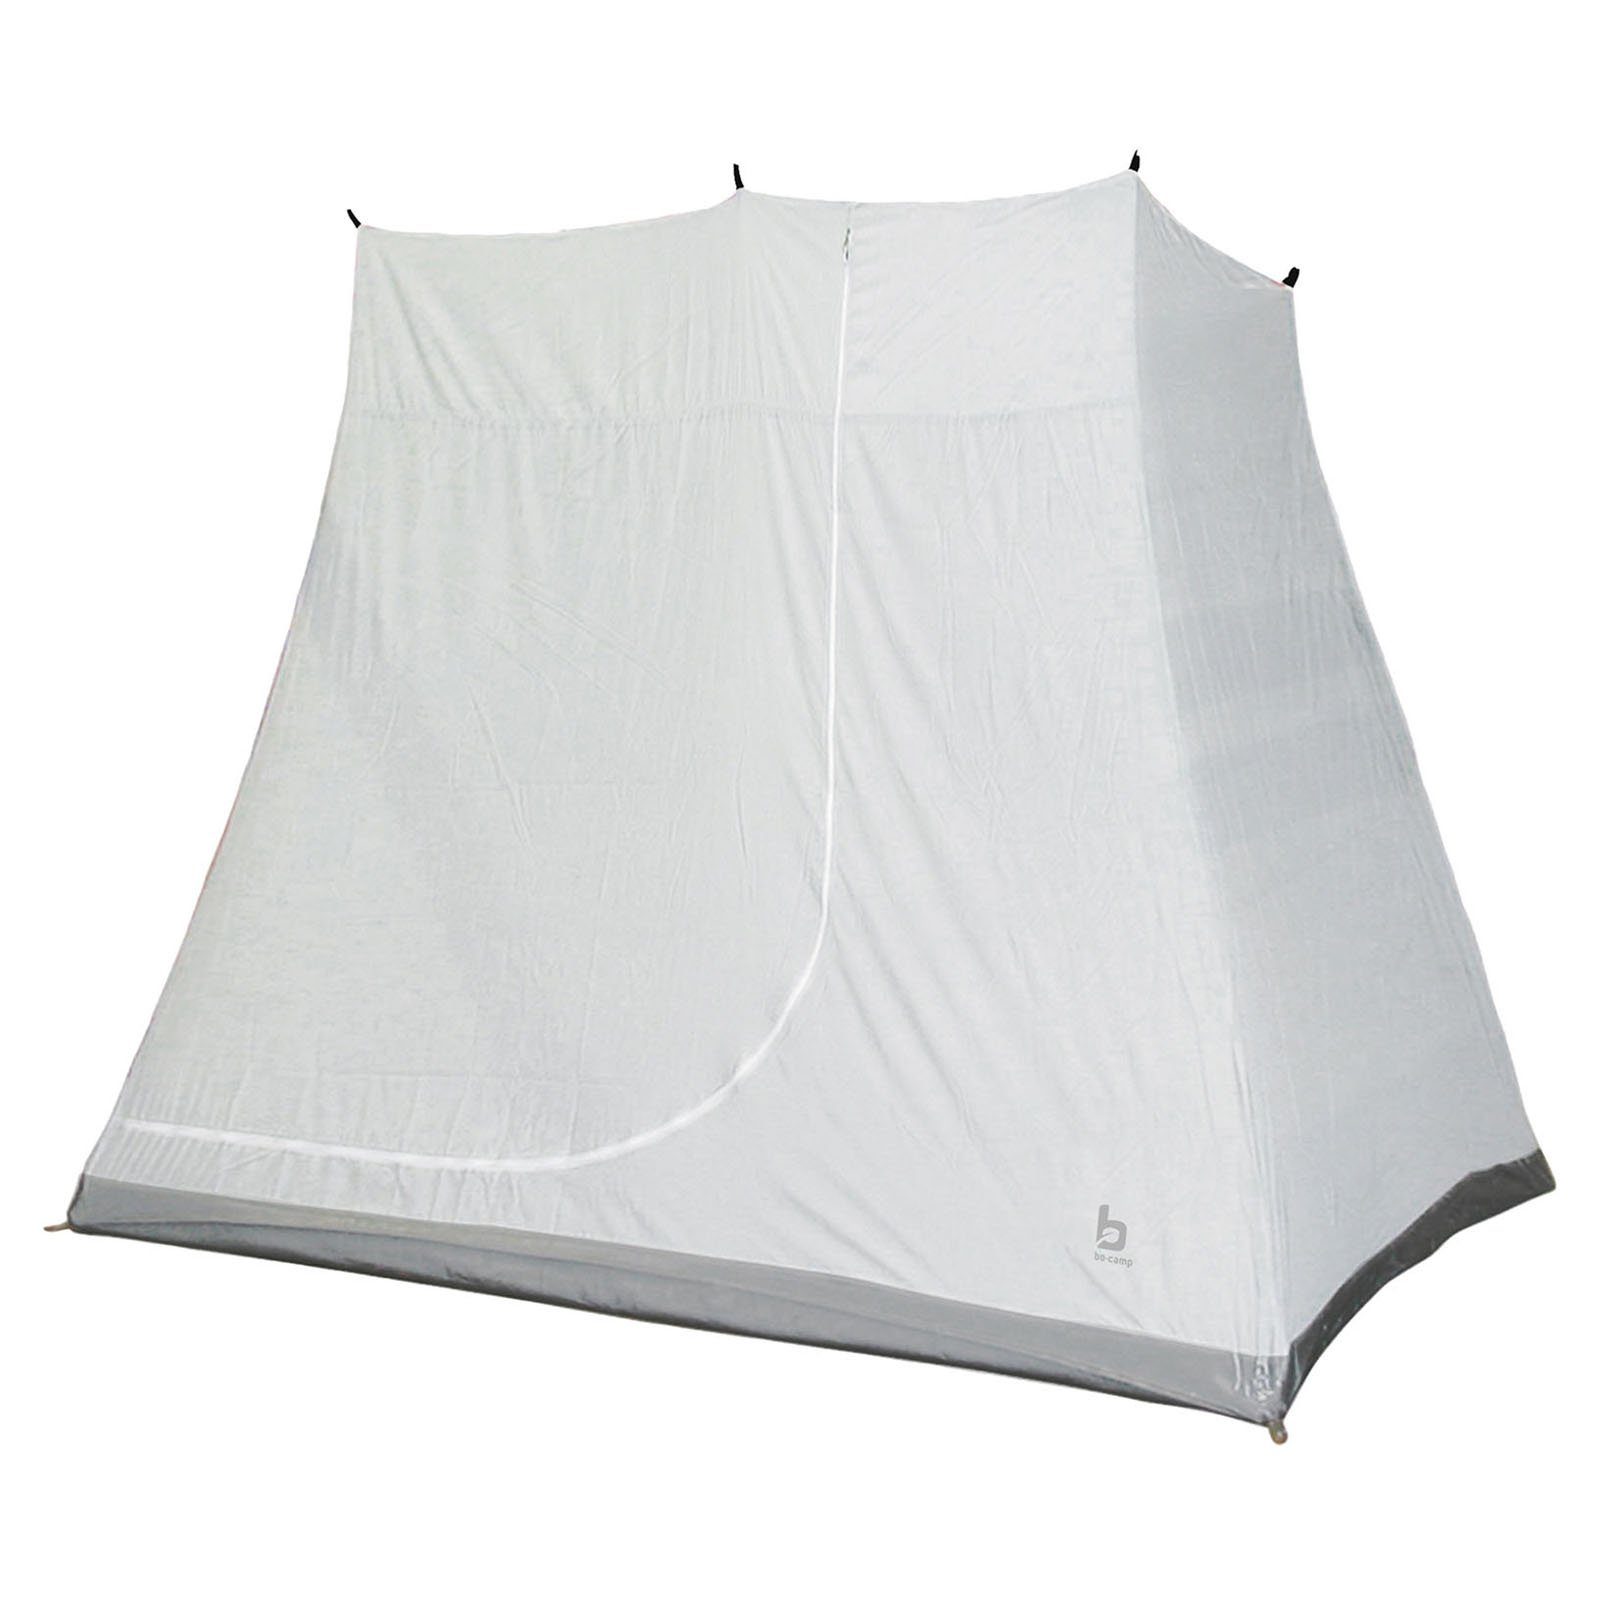 Universal Innenzelt Innenzelt Zelt Camping, Bo-Camp Für Schlaf 200x135x175 Kabine Vorzelt